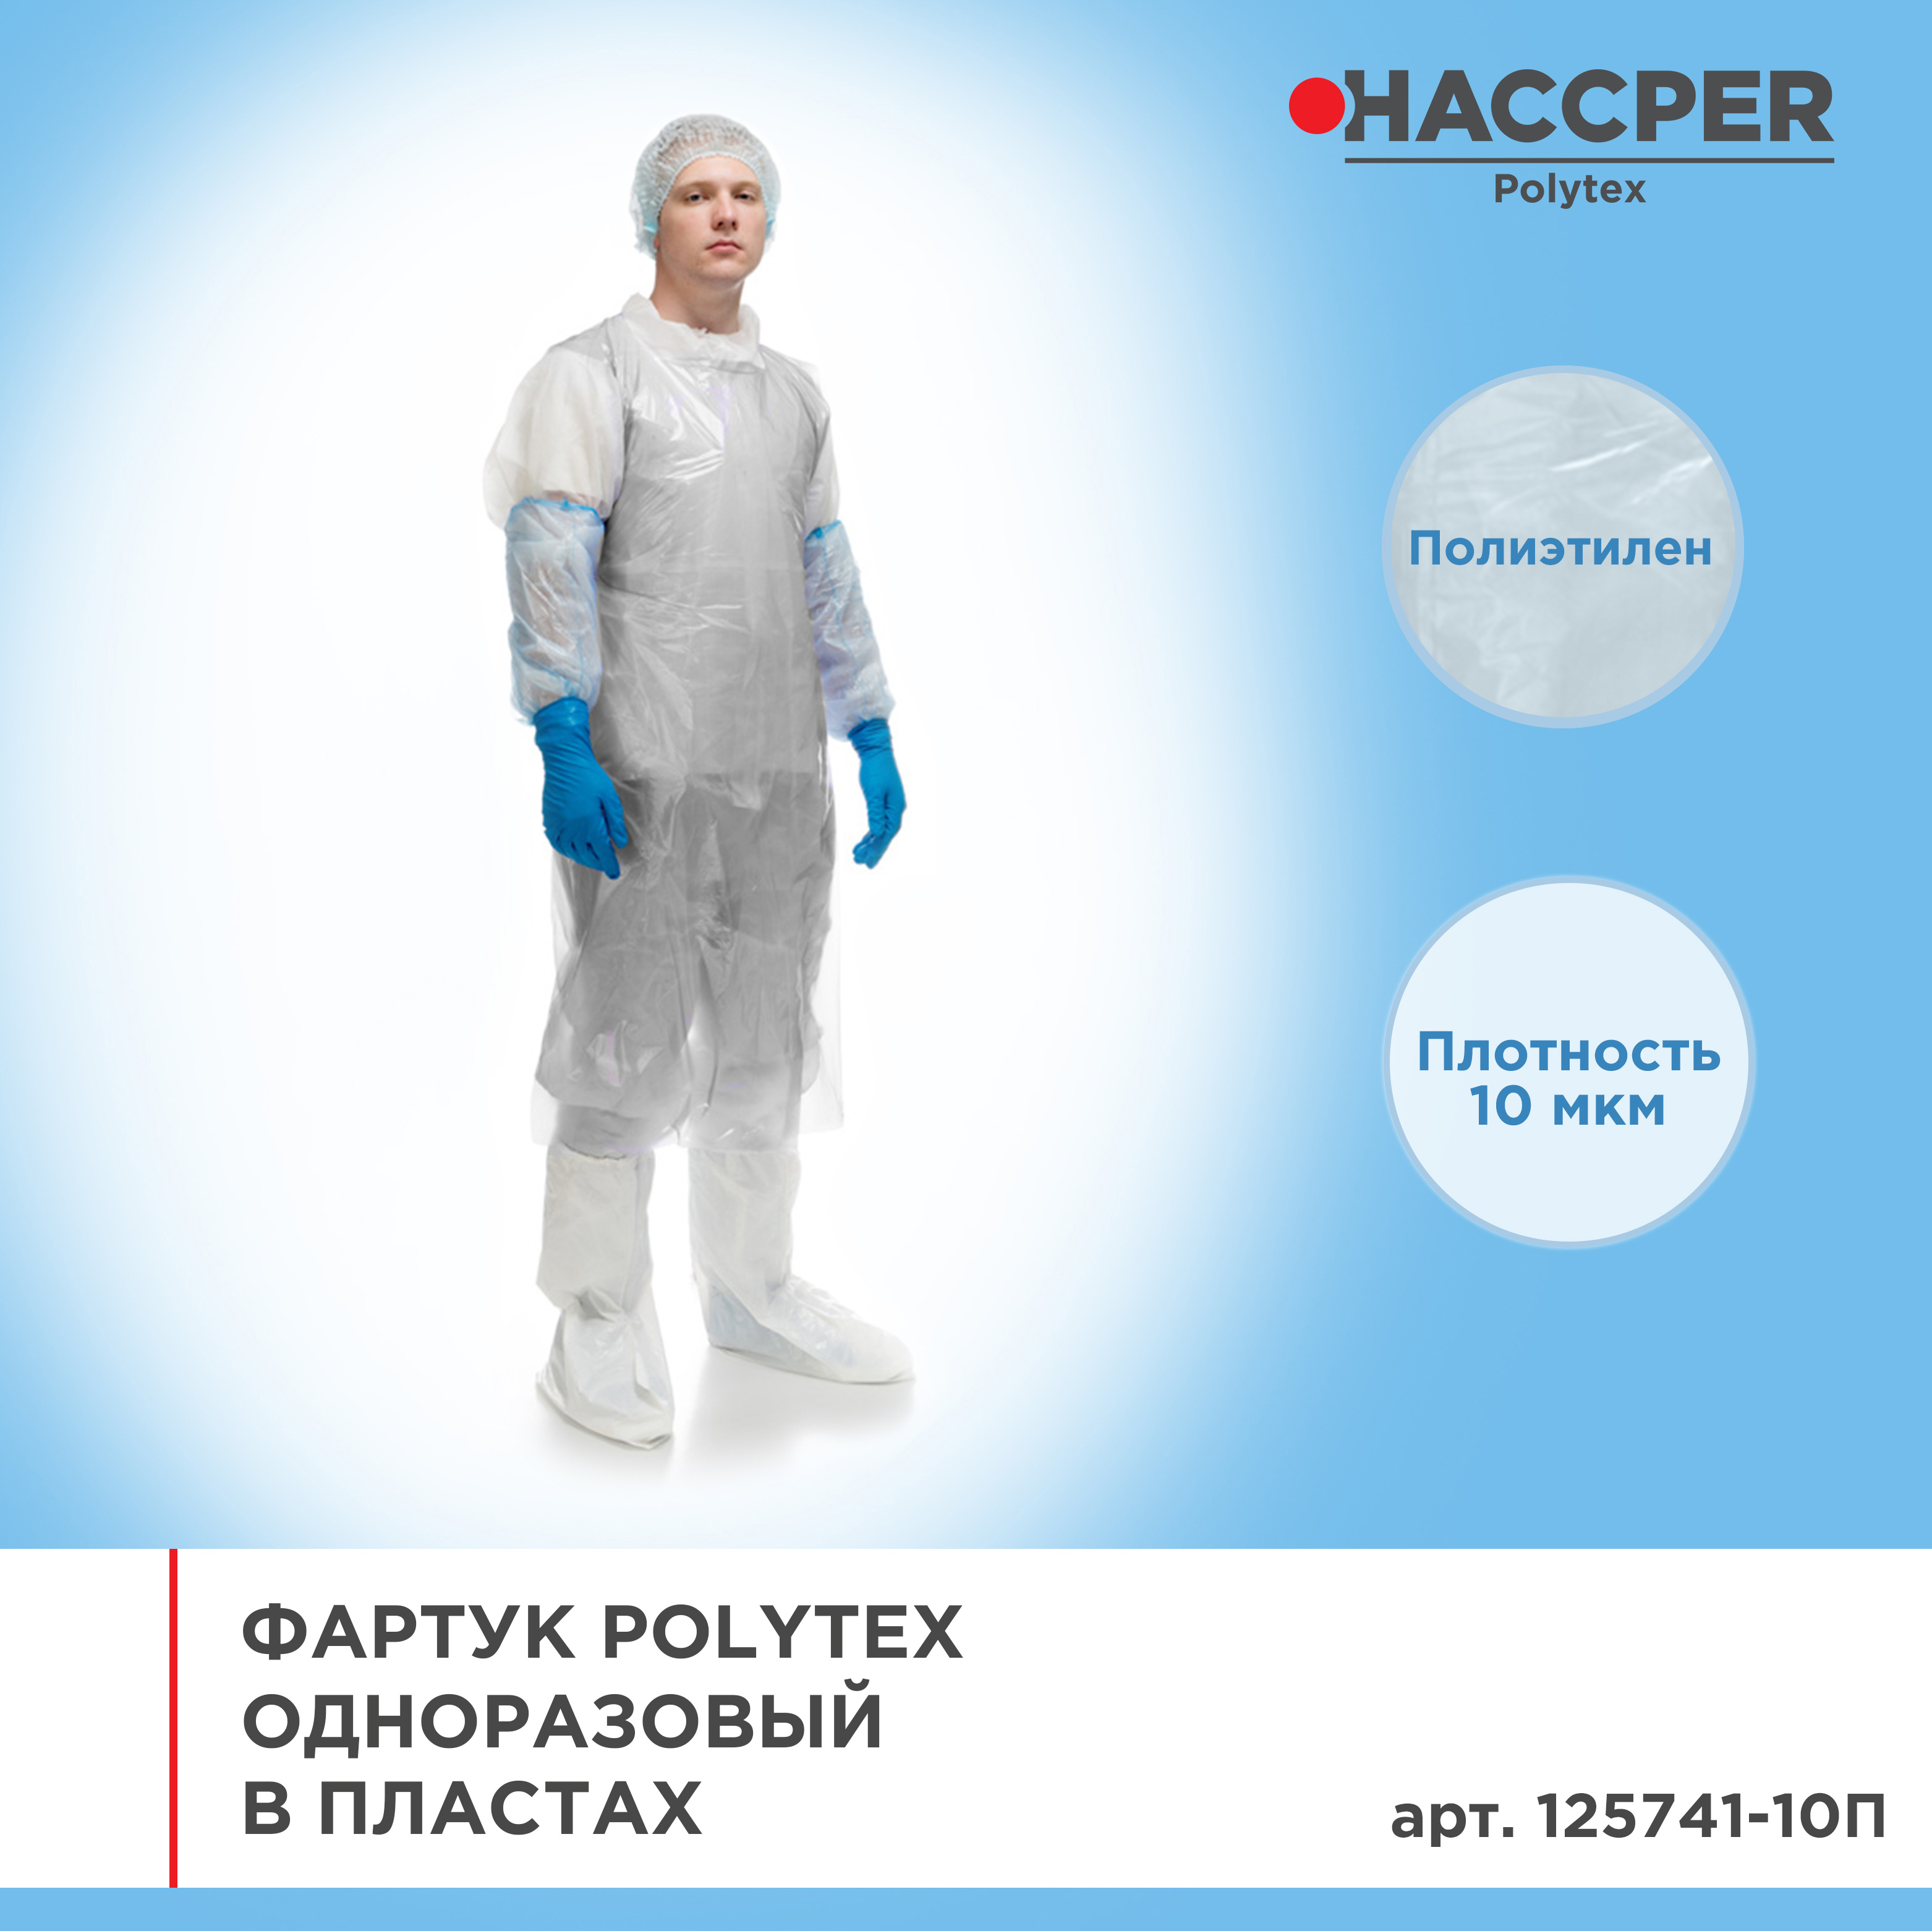 Фартук HACCPER Polytex одноразовый в пластах 1250х740 мм, 10 мкм, белый, 50шт/упак